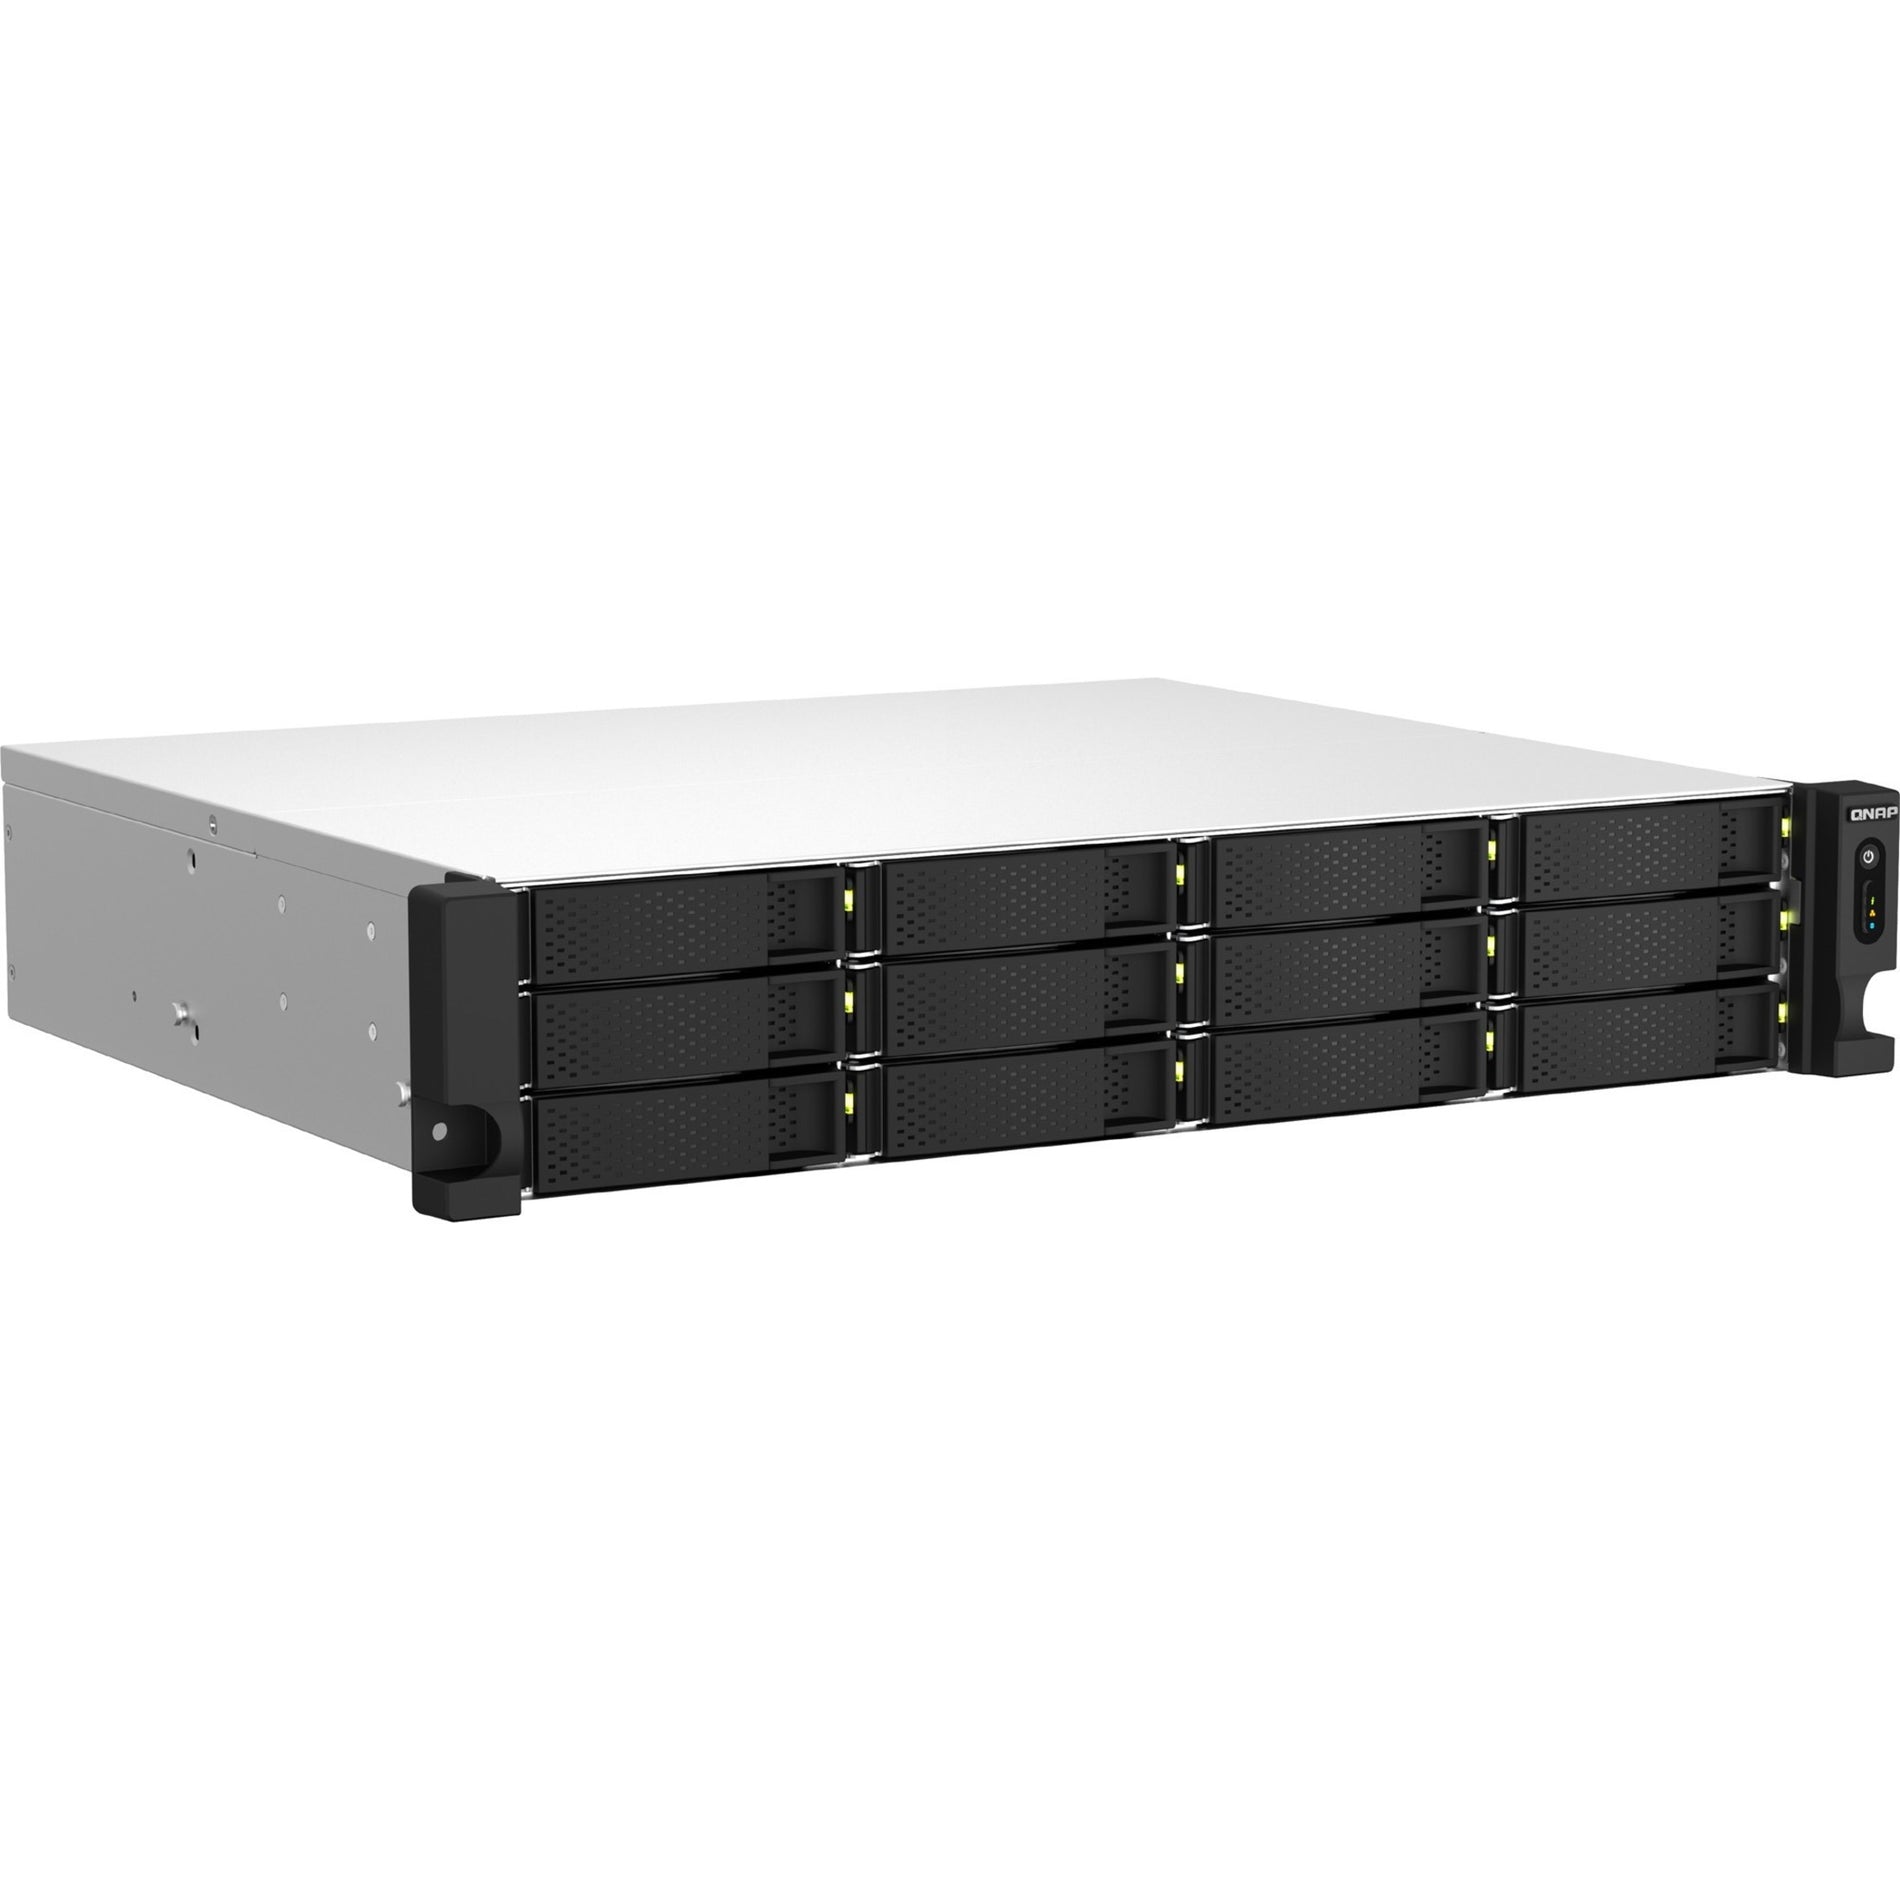 QNAP TS-1264U-RP-4G-US TS-1264U-RP-4G SAN/NAS Storage System, 12 Bays, 4GB RAM, QTS 5.0.0